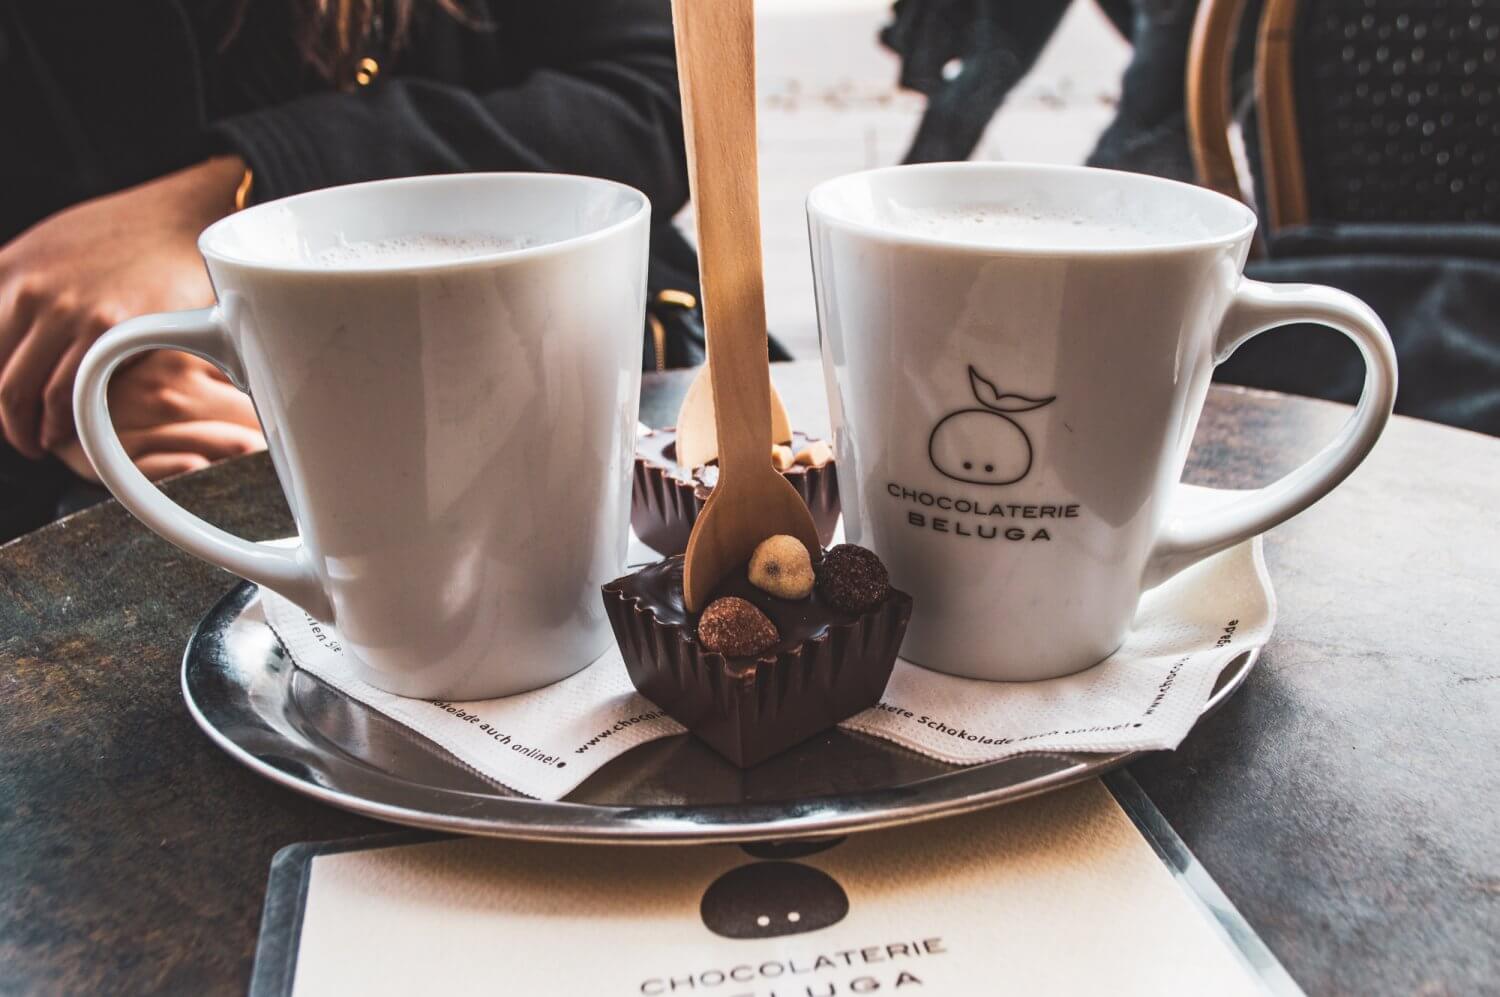 Hot chocolate at Chocolaterie Beluga in Munich